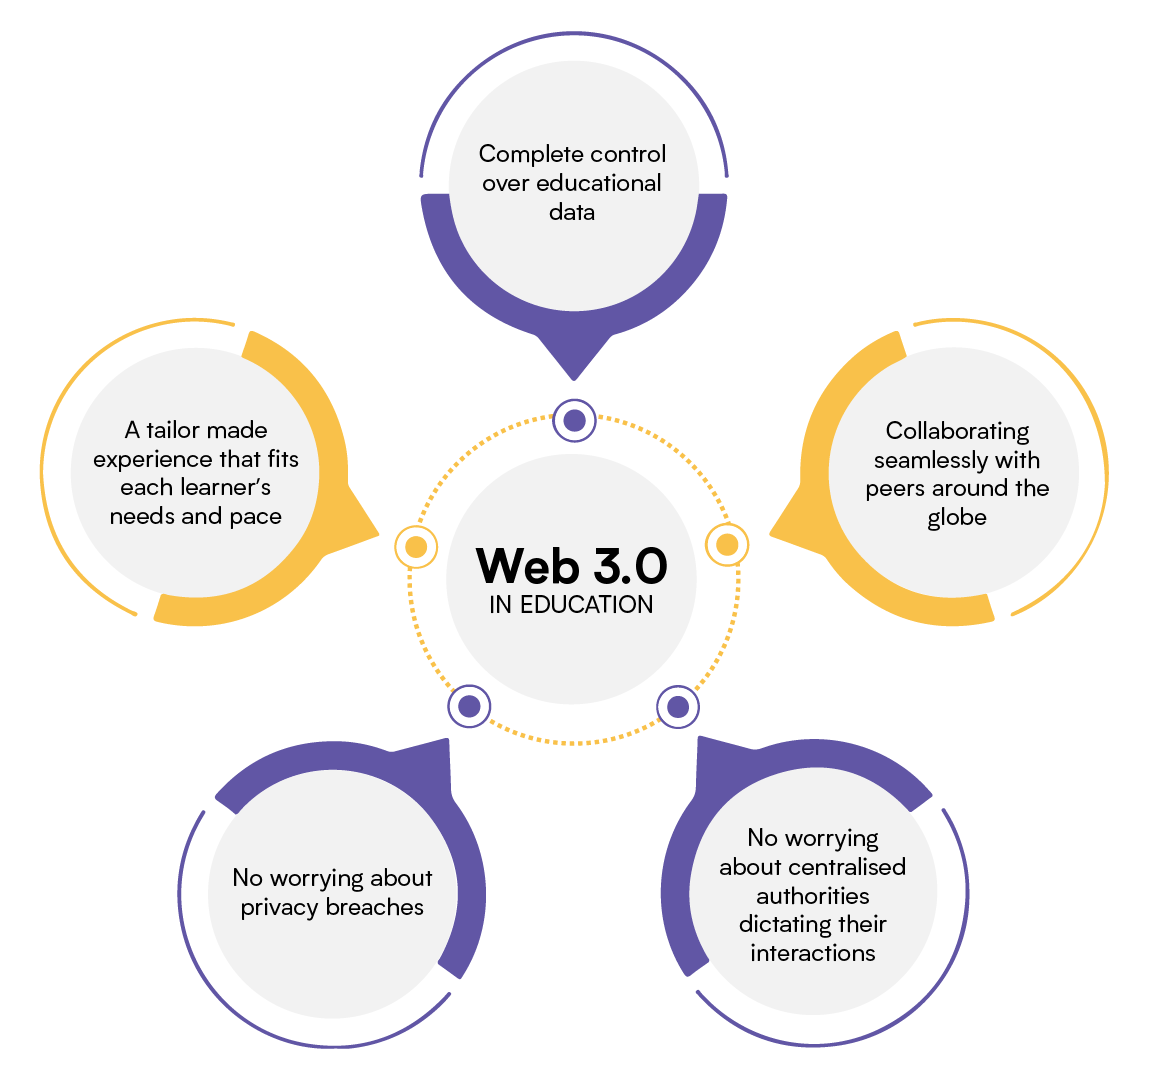 Web 3.0 in education